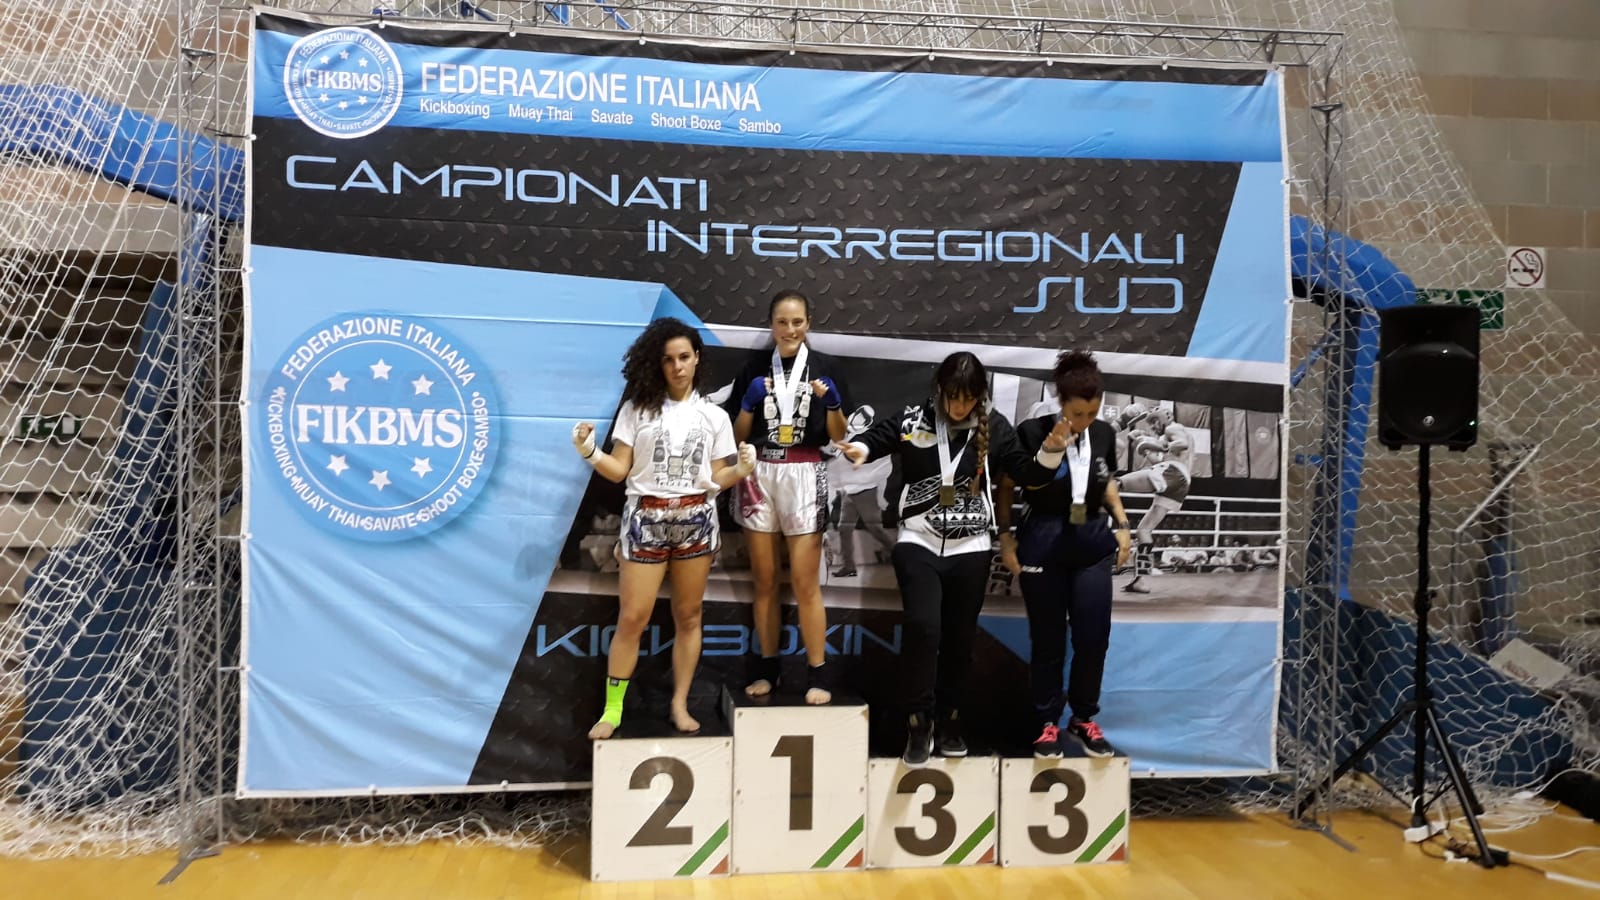 FIKBMS, Campionati Interregionali: risultati brillanti per gli atleti della Dynamic Center di Matera e della Nuova Athena Club di Montescaglioso